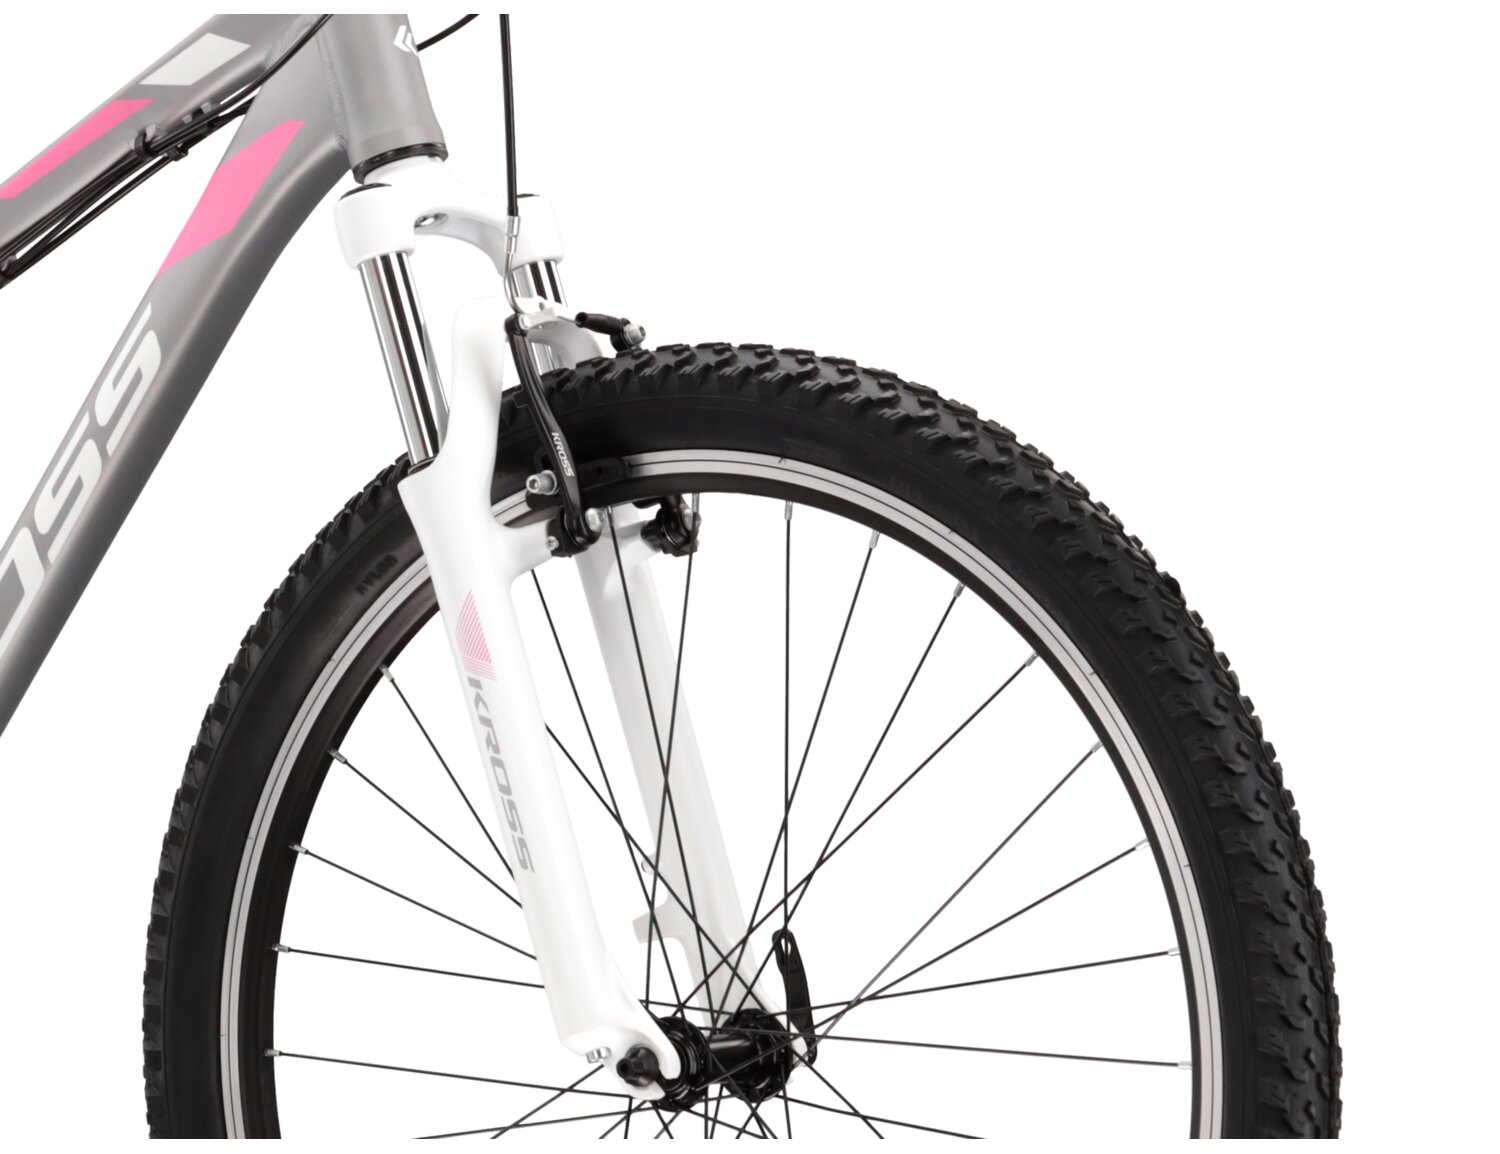  Aluminowa rama, amortyzowany widelec Zoom Forgo 565 o skoku 80mm oraz opony o szerokości 2,1 cala w damskim rowerze górskim MTB Woman KROSS Lea 2.0